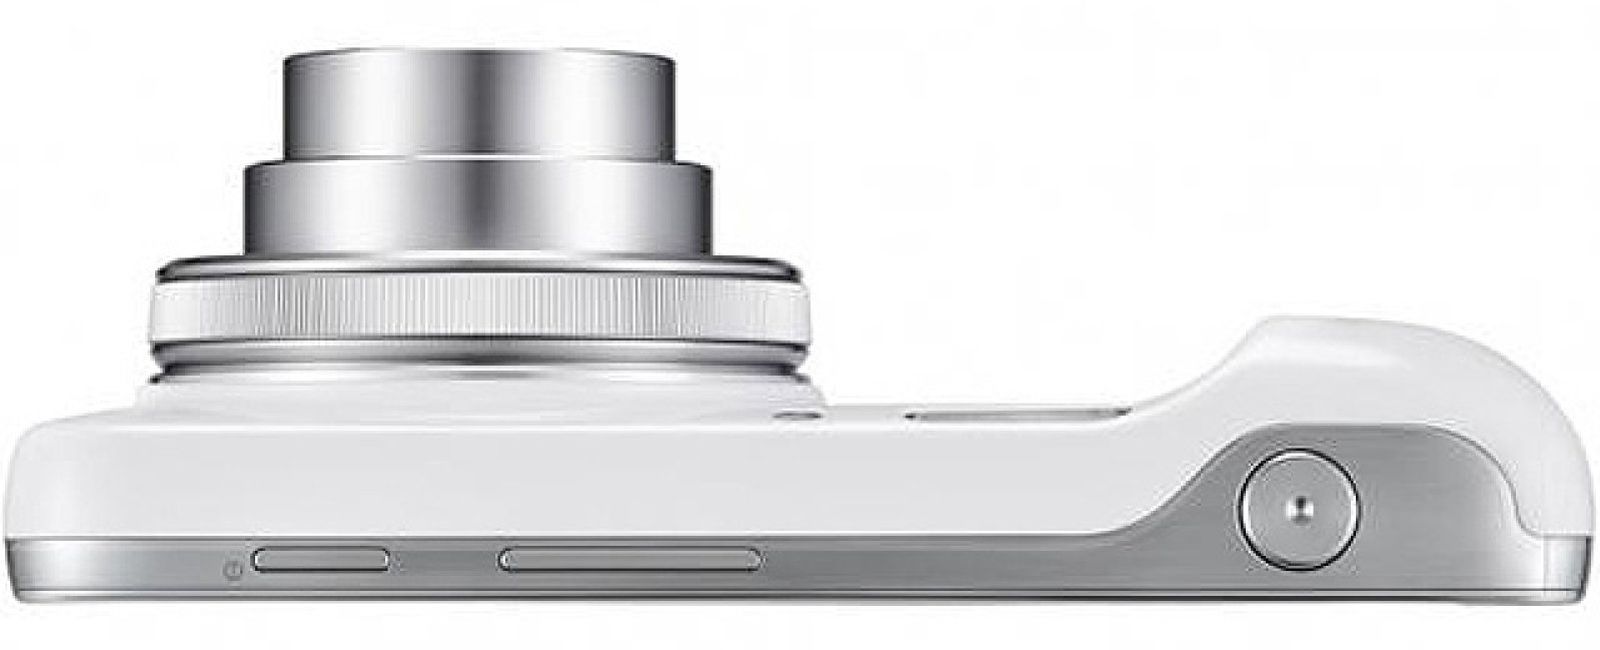 Foto: Samsung le pone cámara a su buque insignia: llega el Galaxy S4 zoom